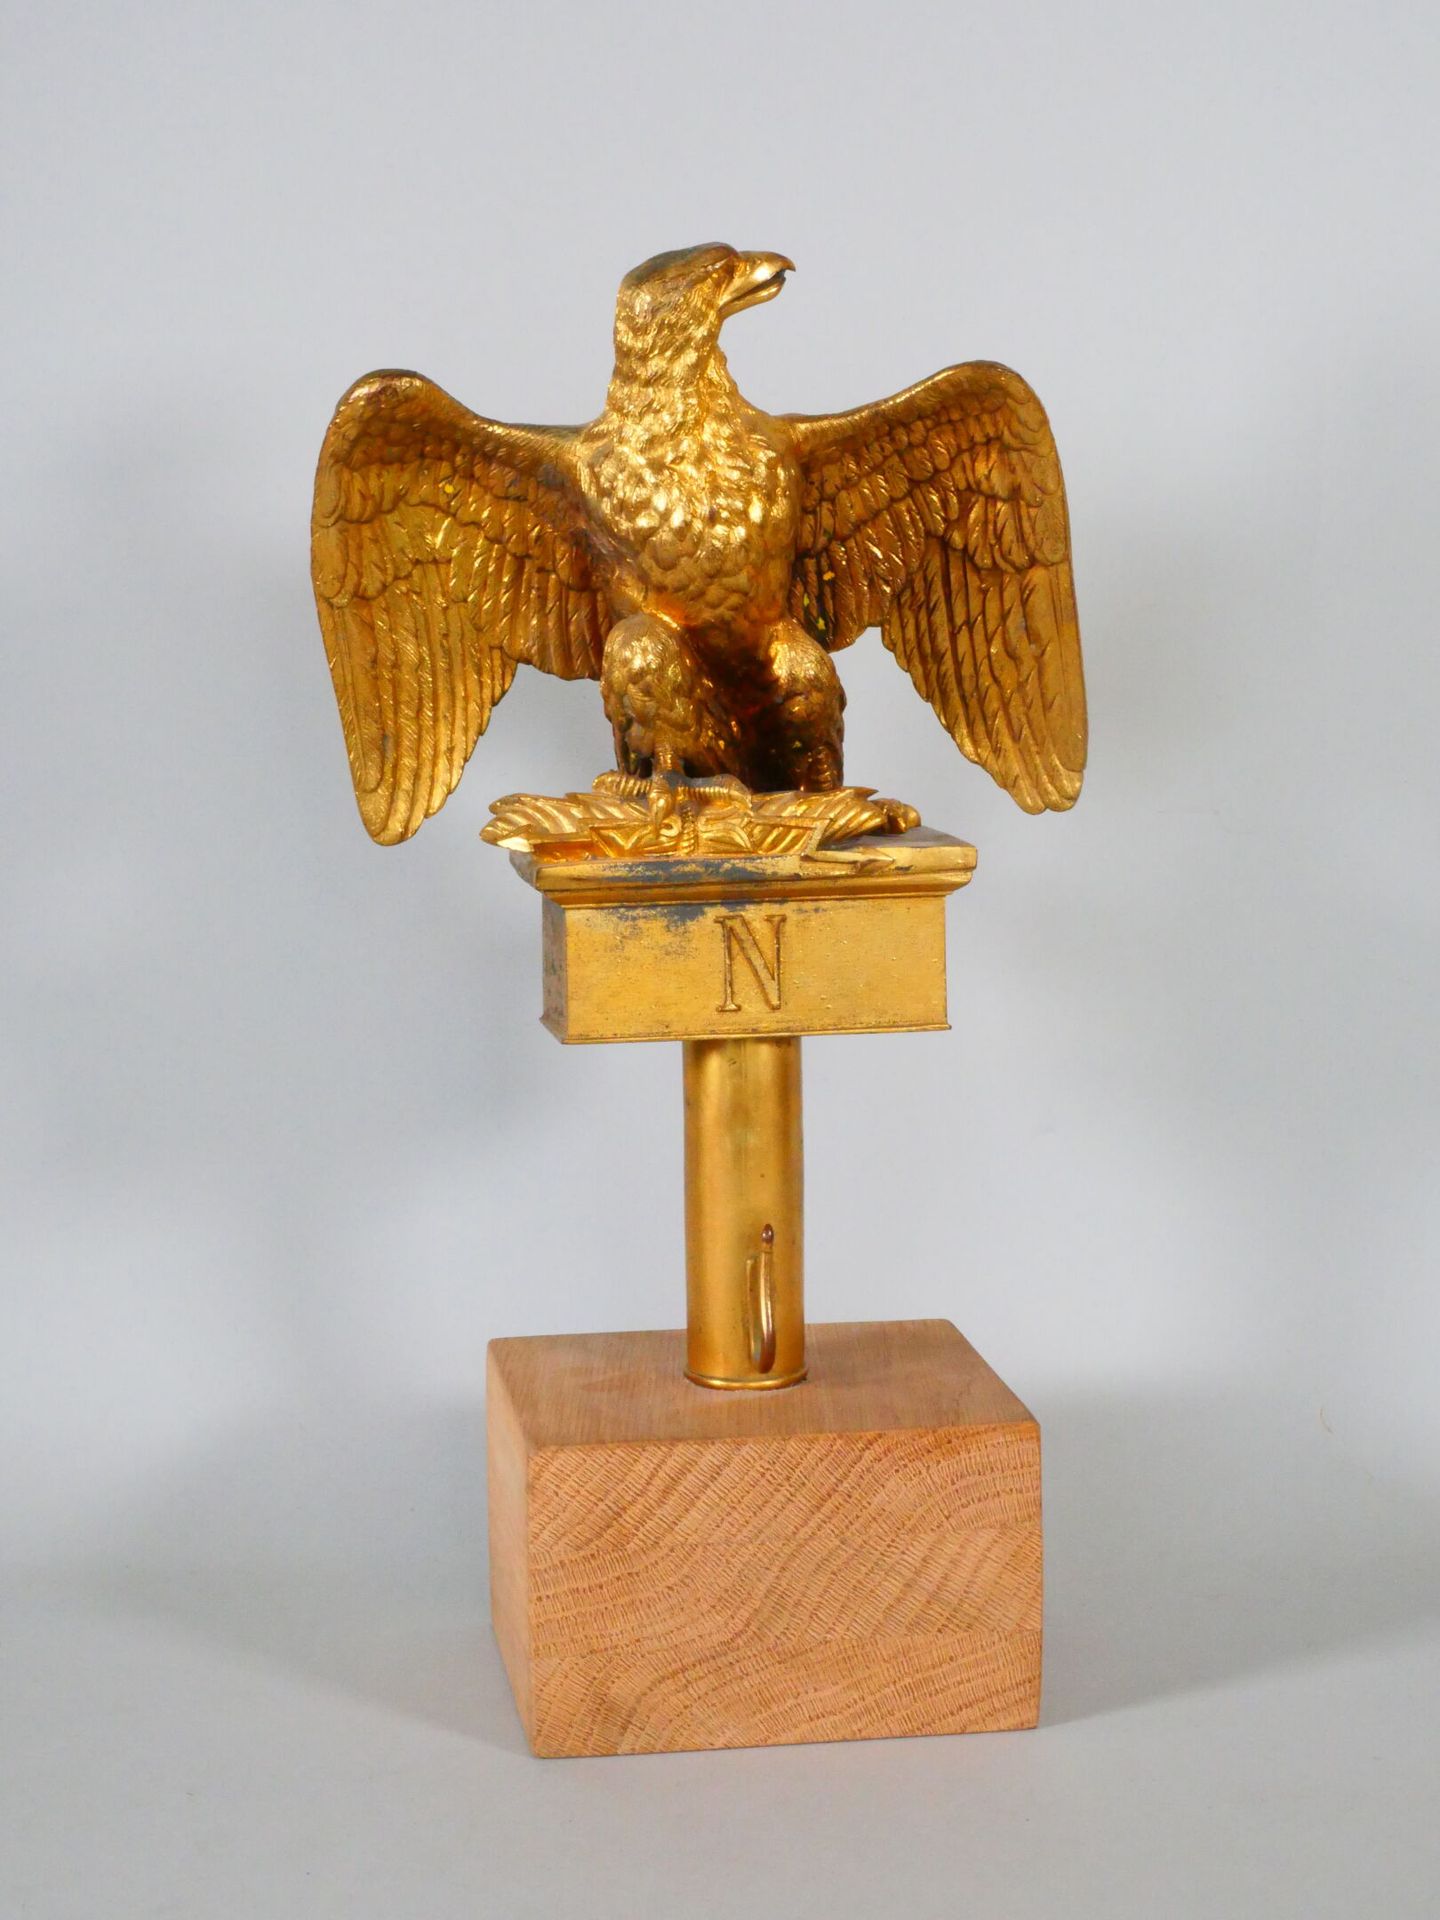 Null 旗鹰，1854型，19世纪末制作，镀金金属。呈现在一个木质底座上。高度：29厘米，翼展：20.4厘米（磨损）。

专家 : Gaetan BRUNEL&hellip;